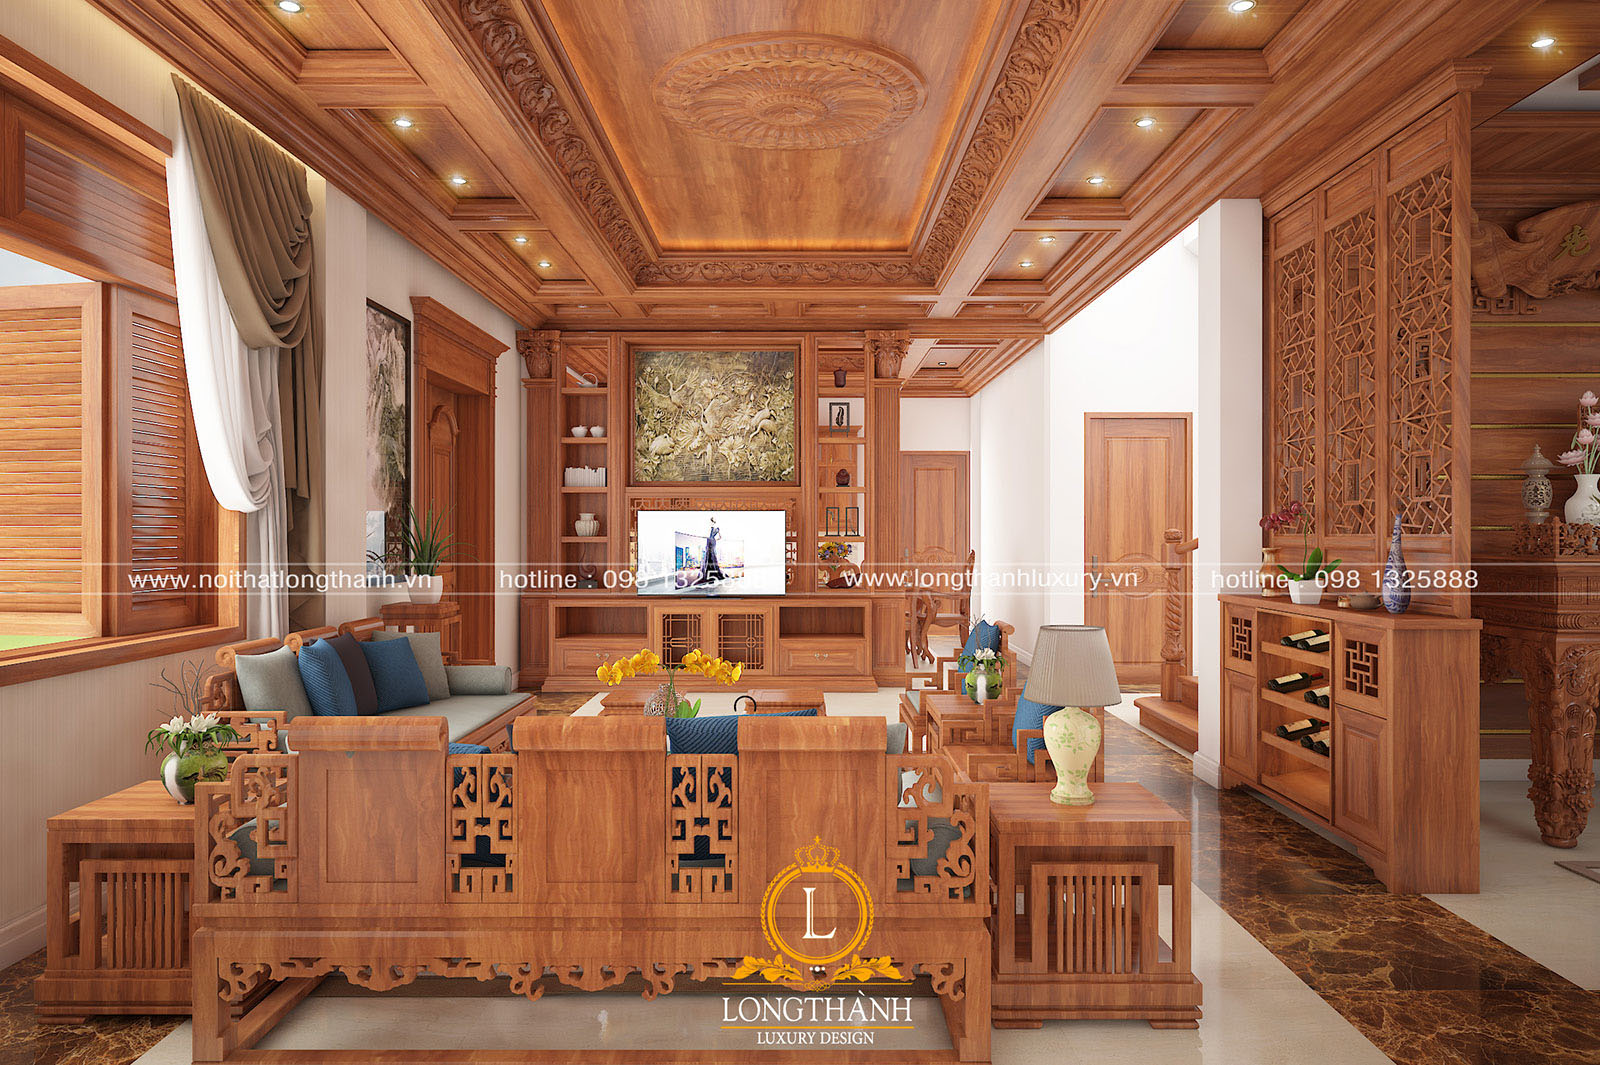 Mẫu thiết kế nội thất tân cổ điển gỗ tự nhiên cho biệt thự